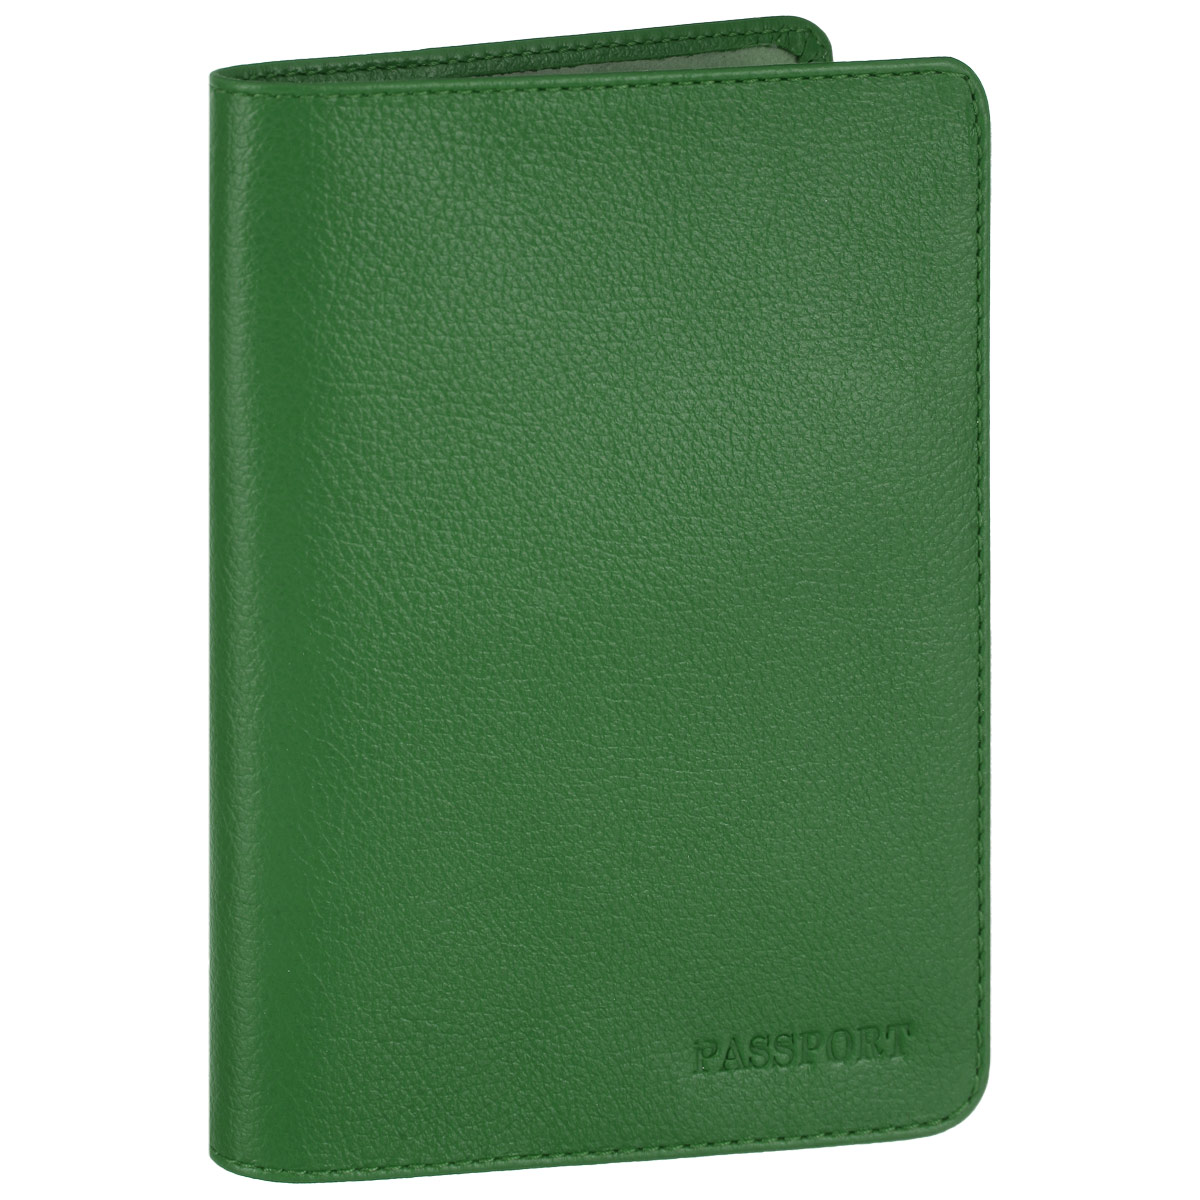 Обложка для паспорта Fabula, цвет: зеленый. O.53.FP